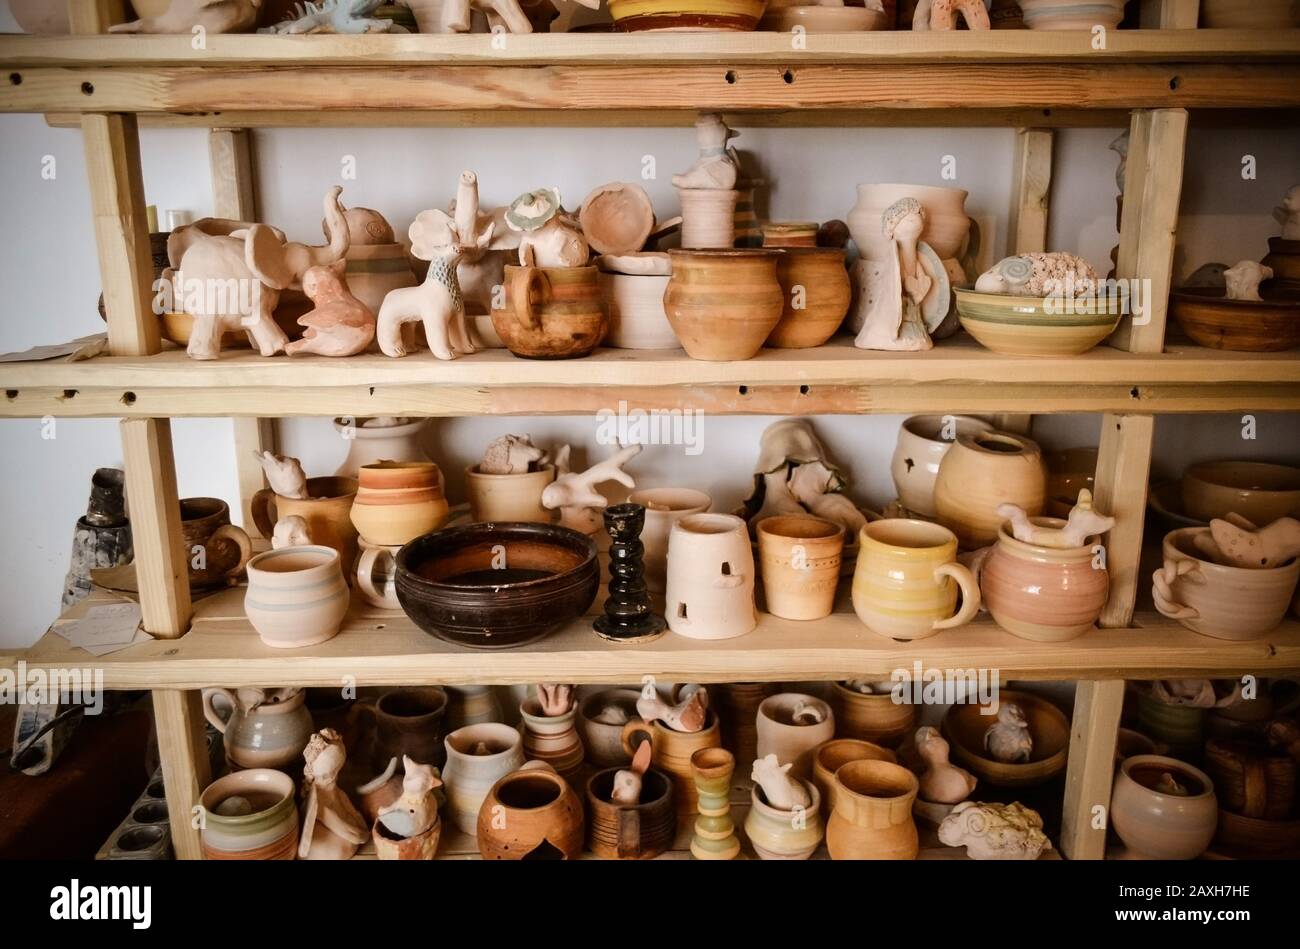 Des étagères en bois dans un atelier de poterie où il y a de la poterie, beaucoup de poterie différentes debout sur les étagères dans un atelier de poterie. Faible luminosité Banque D'Images